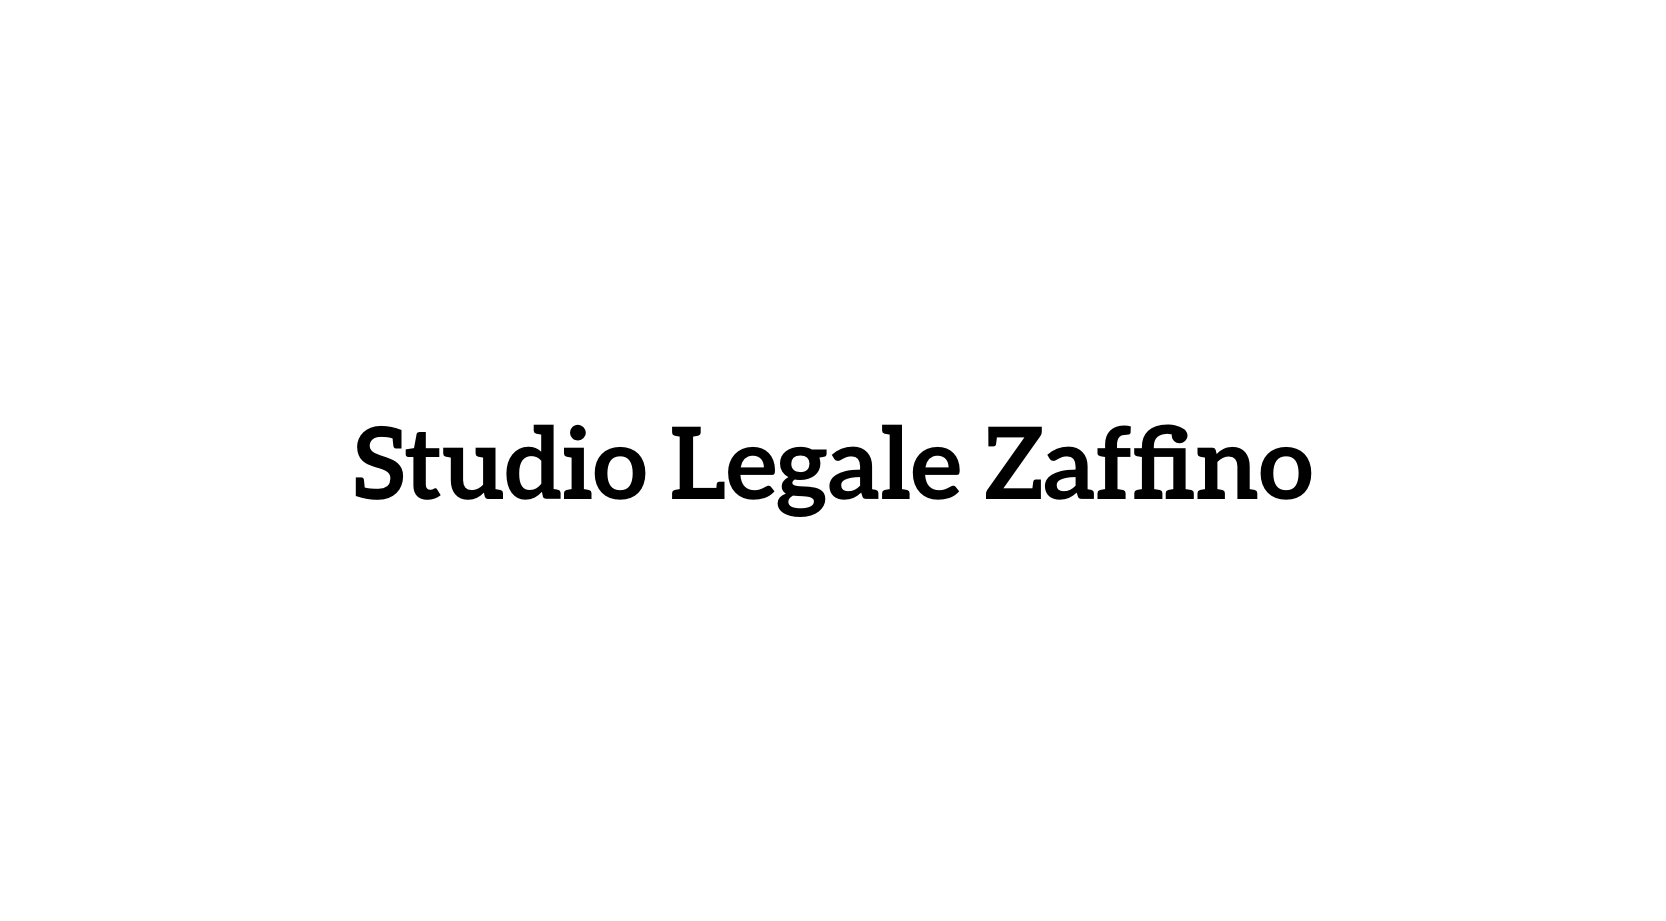 Studio Legale Zaffino